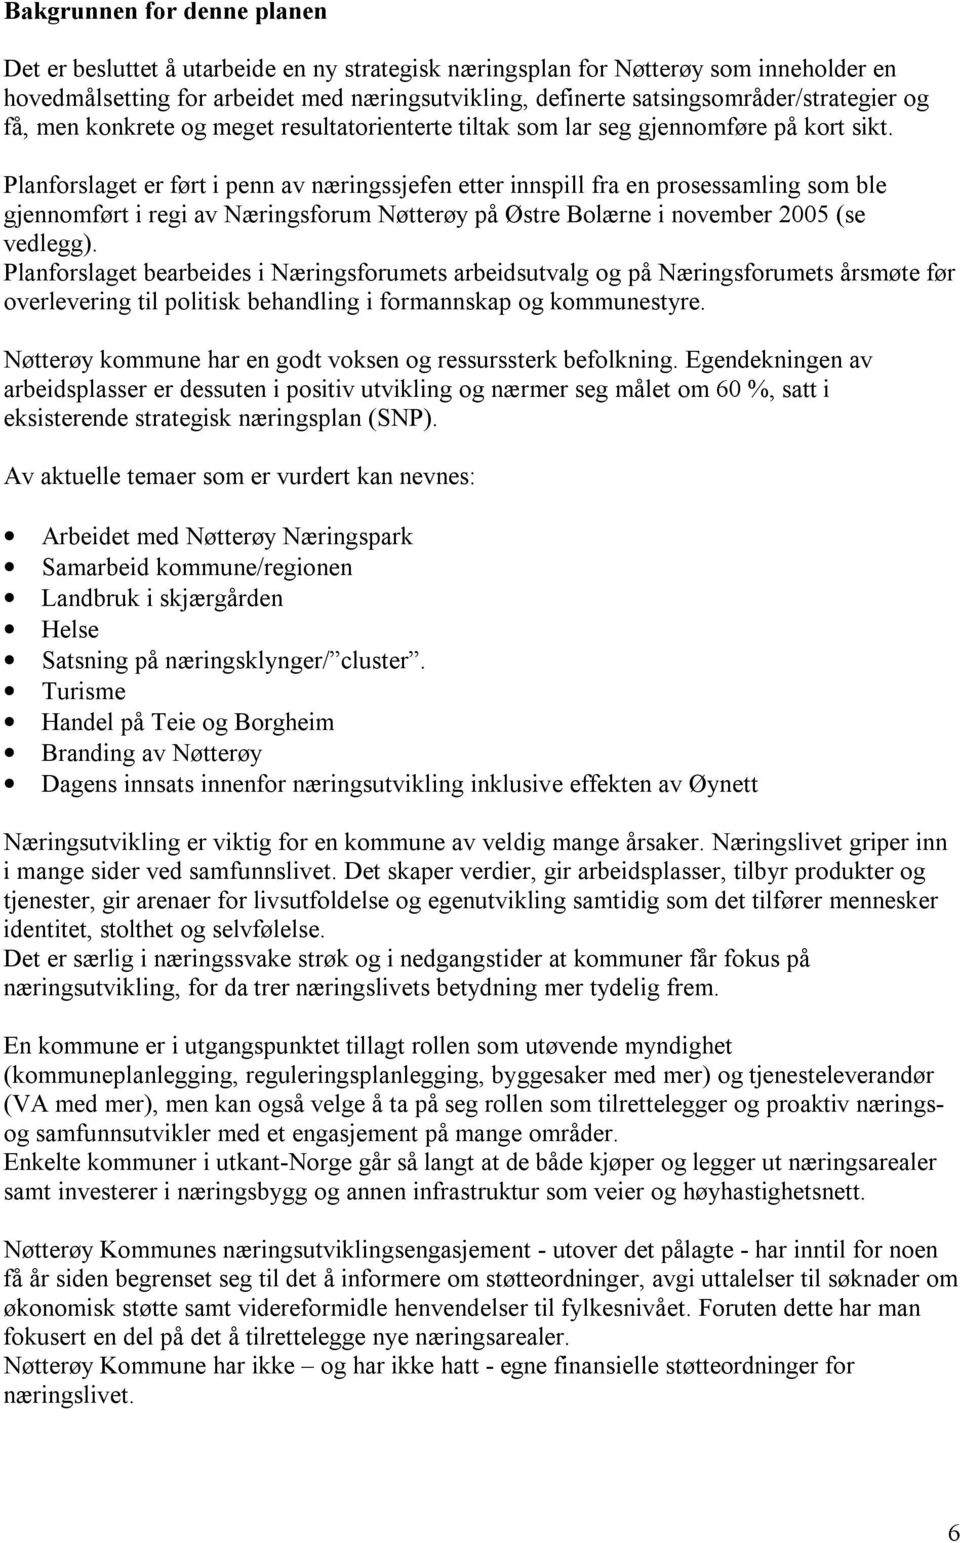 Planforslaget er ført i penn av næringssjefen etter innspill fra en prosessamling som ble gjennomført i regi av Næringsforum Nøtterøy på Østre Bolærne i november 2005 (se vedlegg).